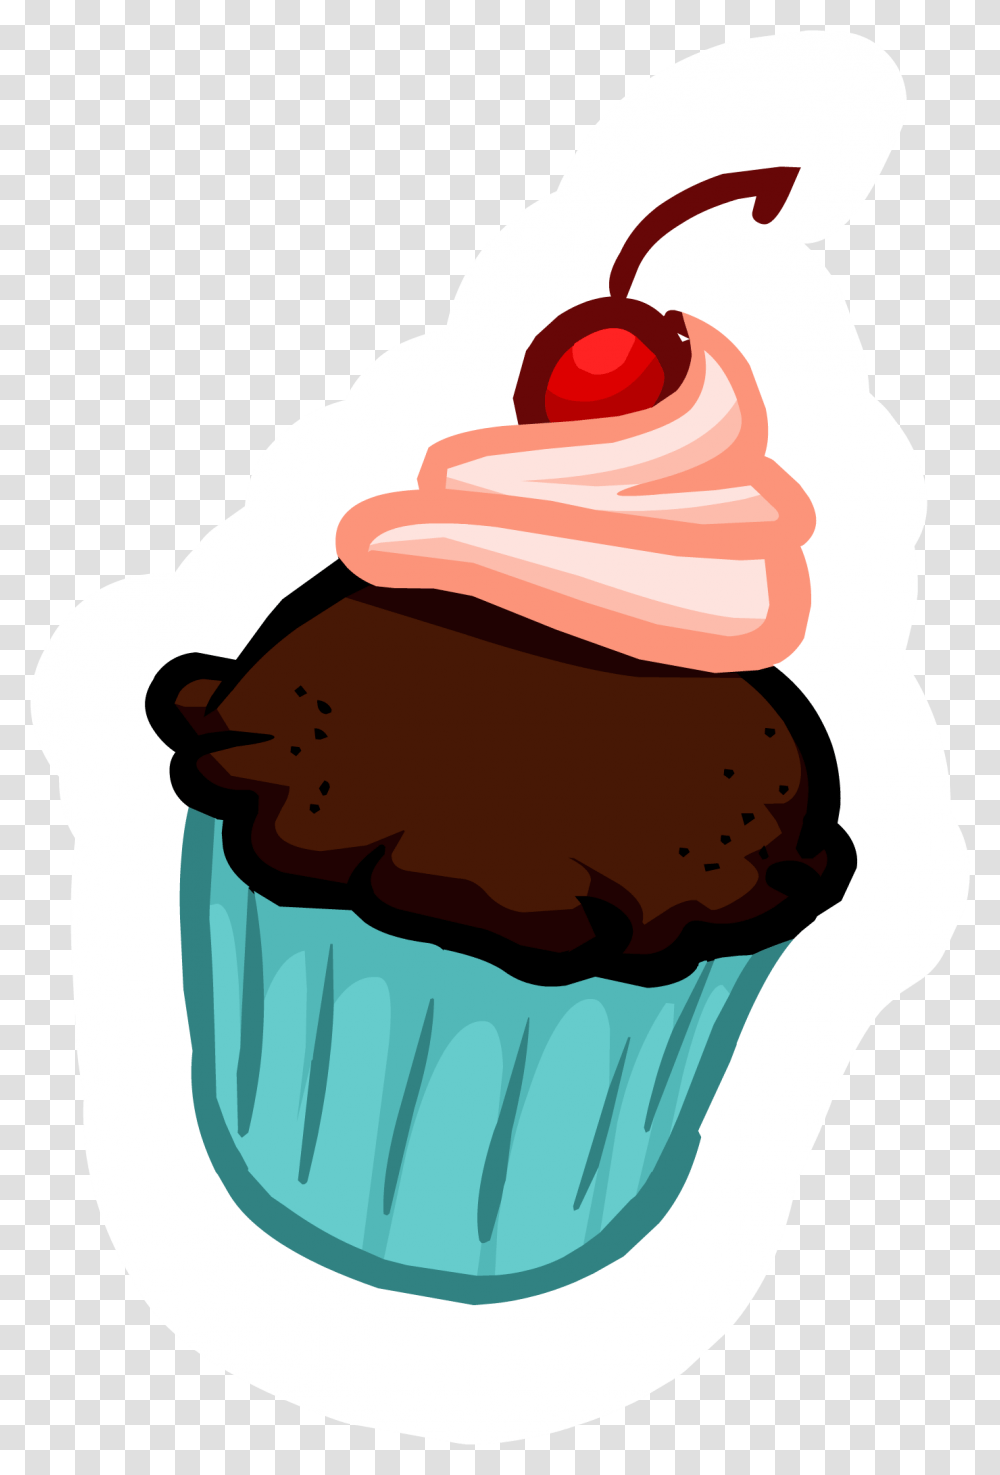 Club Penguin Rewritten Wiki Cupcake Thumbnail, Cream, Dessert, Food, Creme Transparent Png